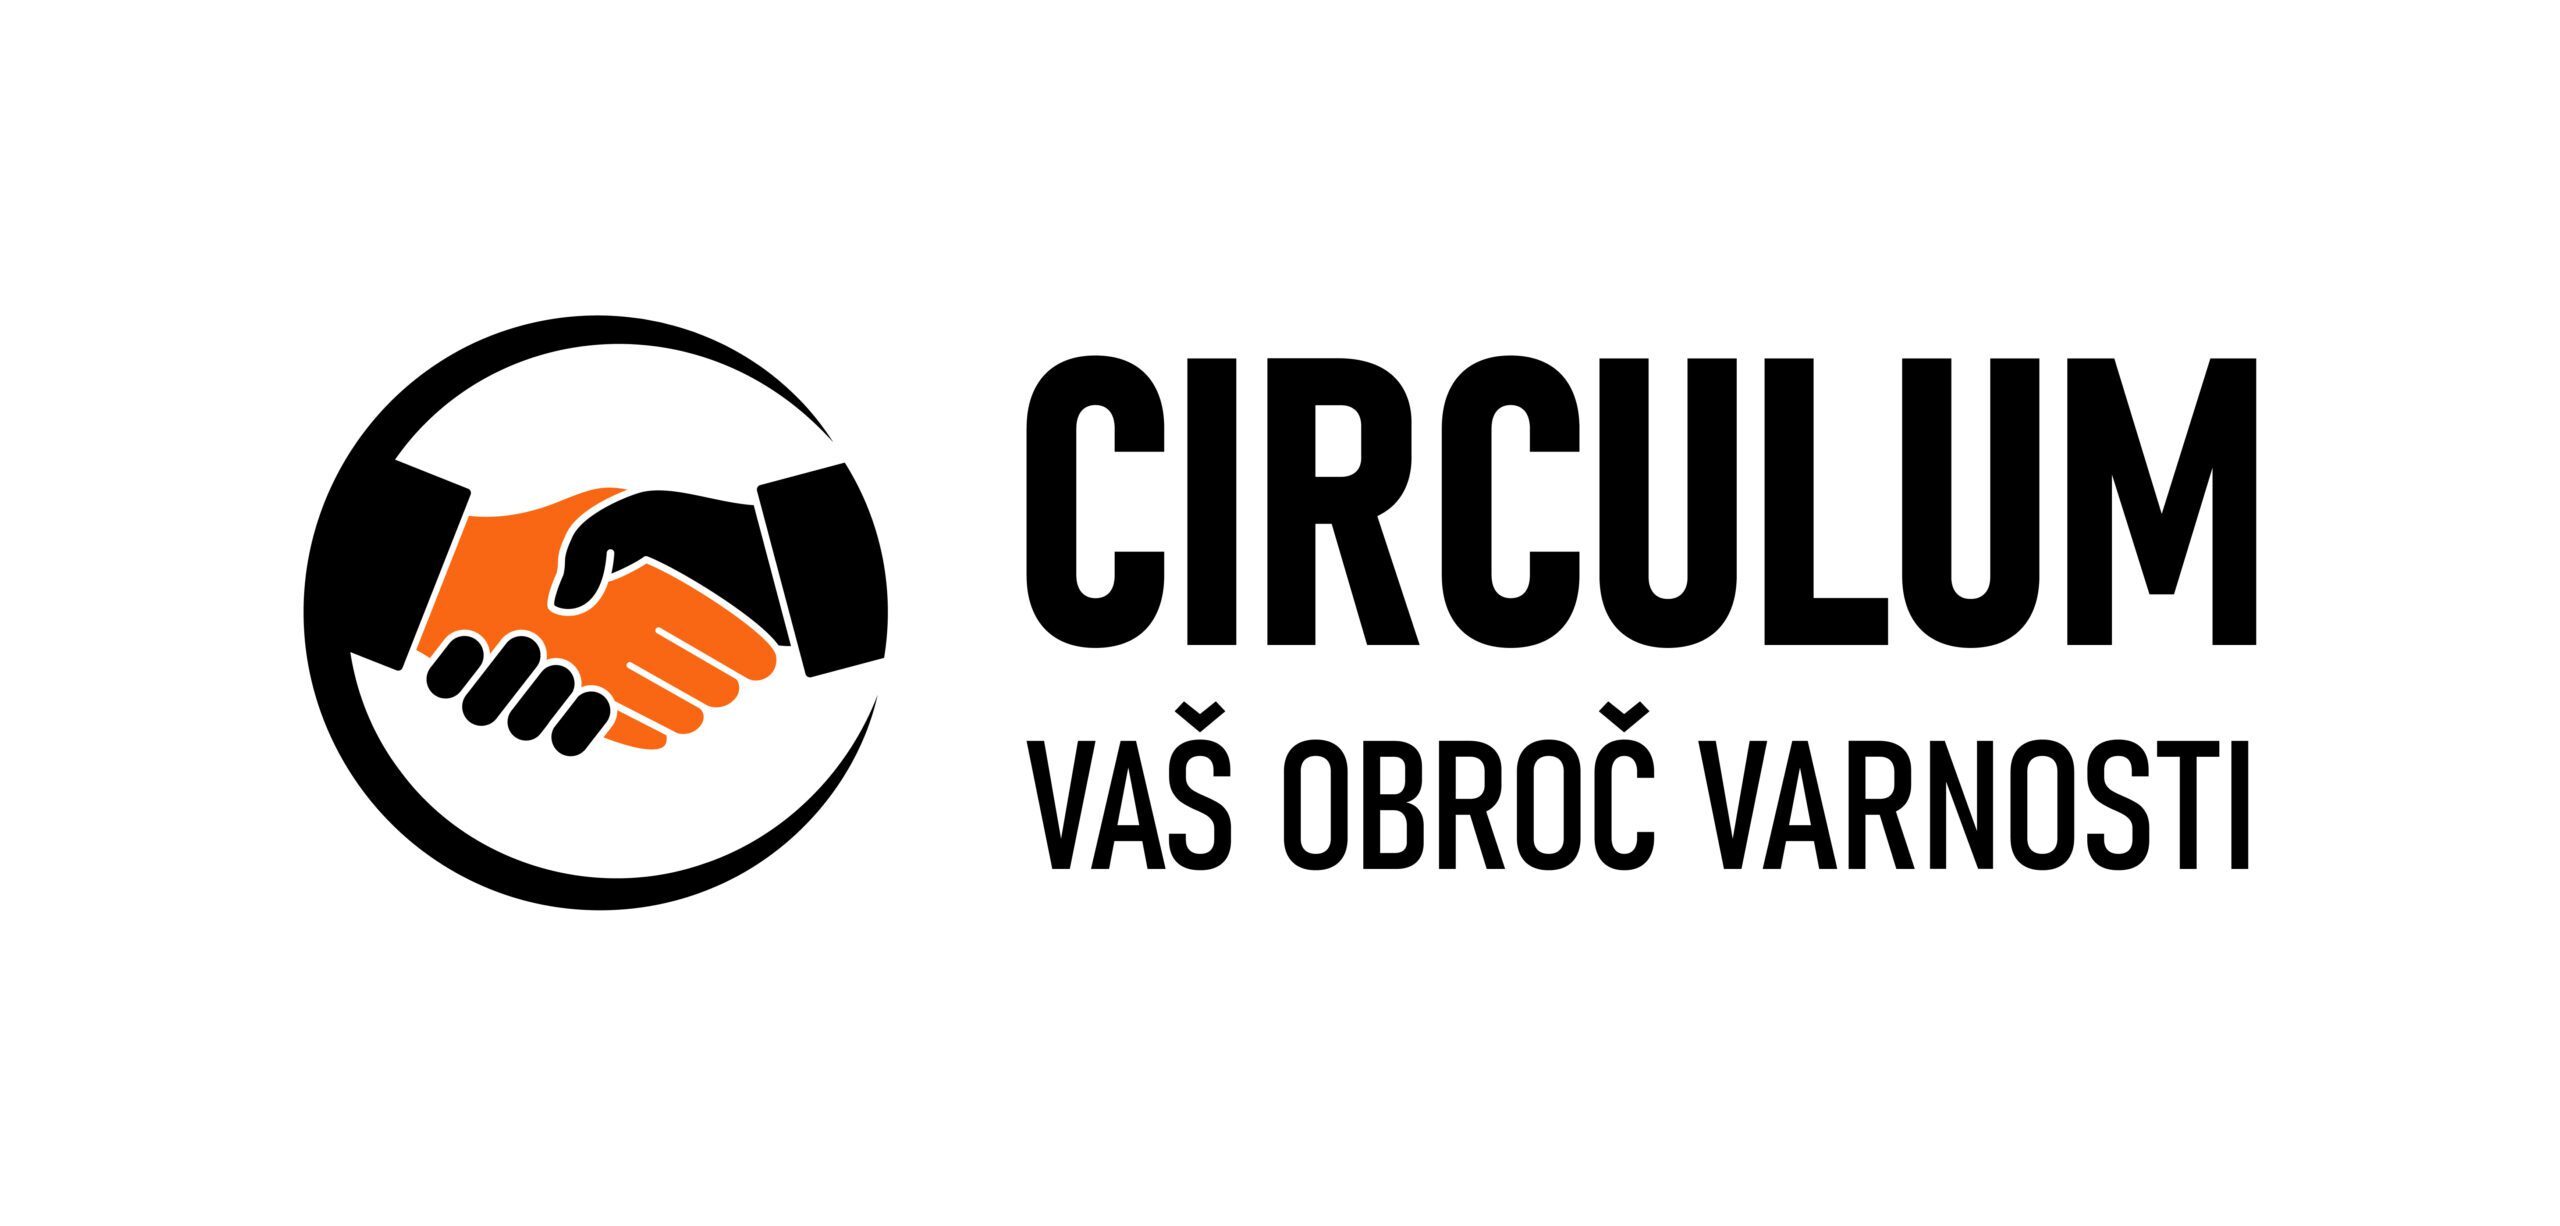 Circulum logo ležeči